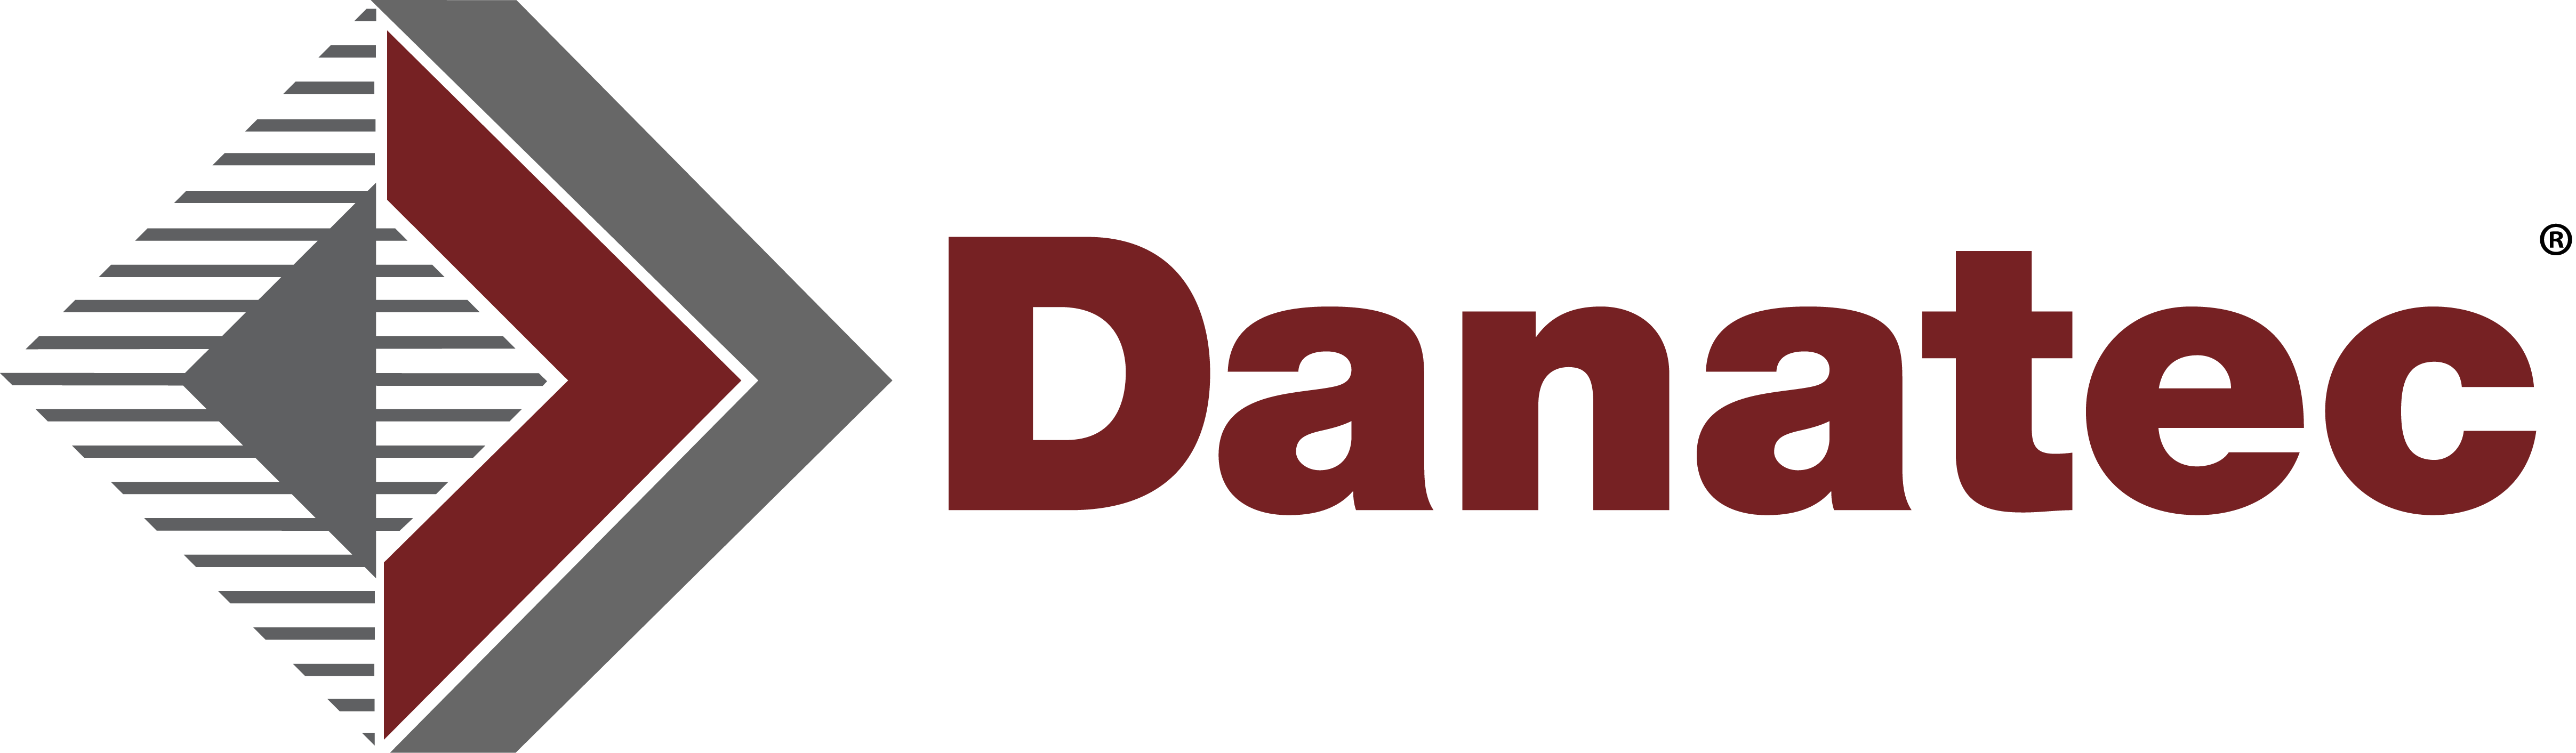 Danatec Releases 12 